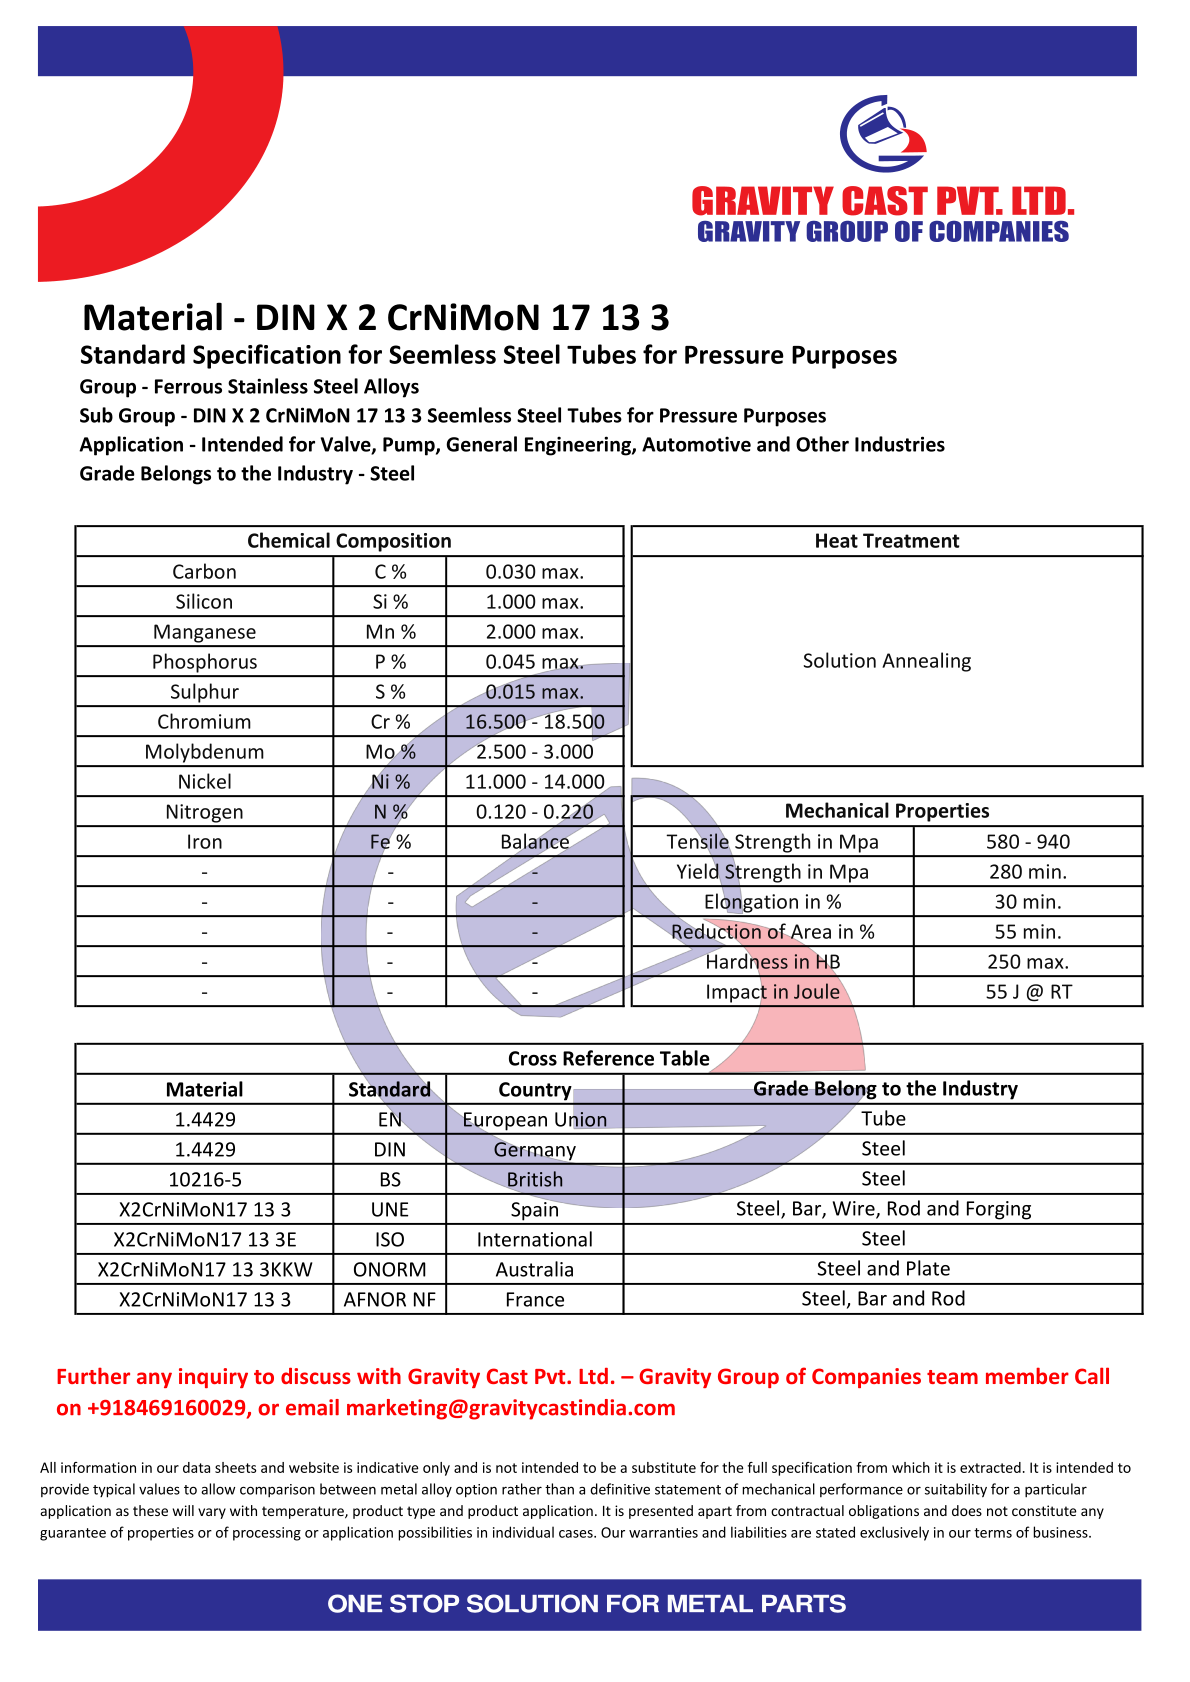 DIN X 2 CrNiMoN 17 13 3.pdf